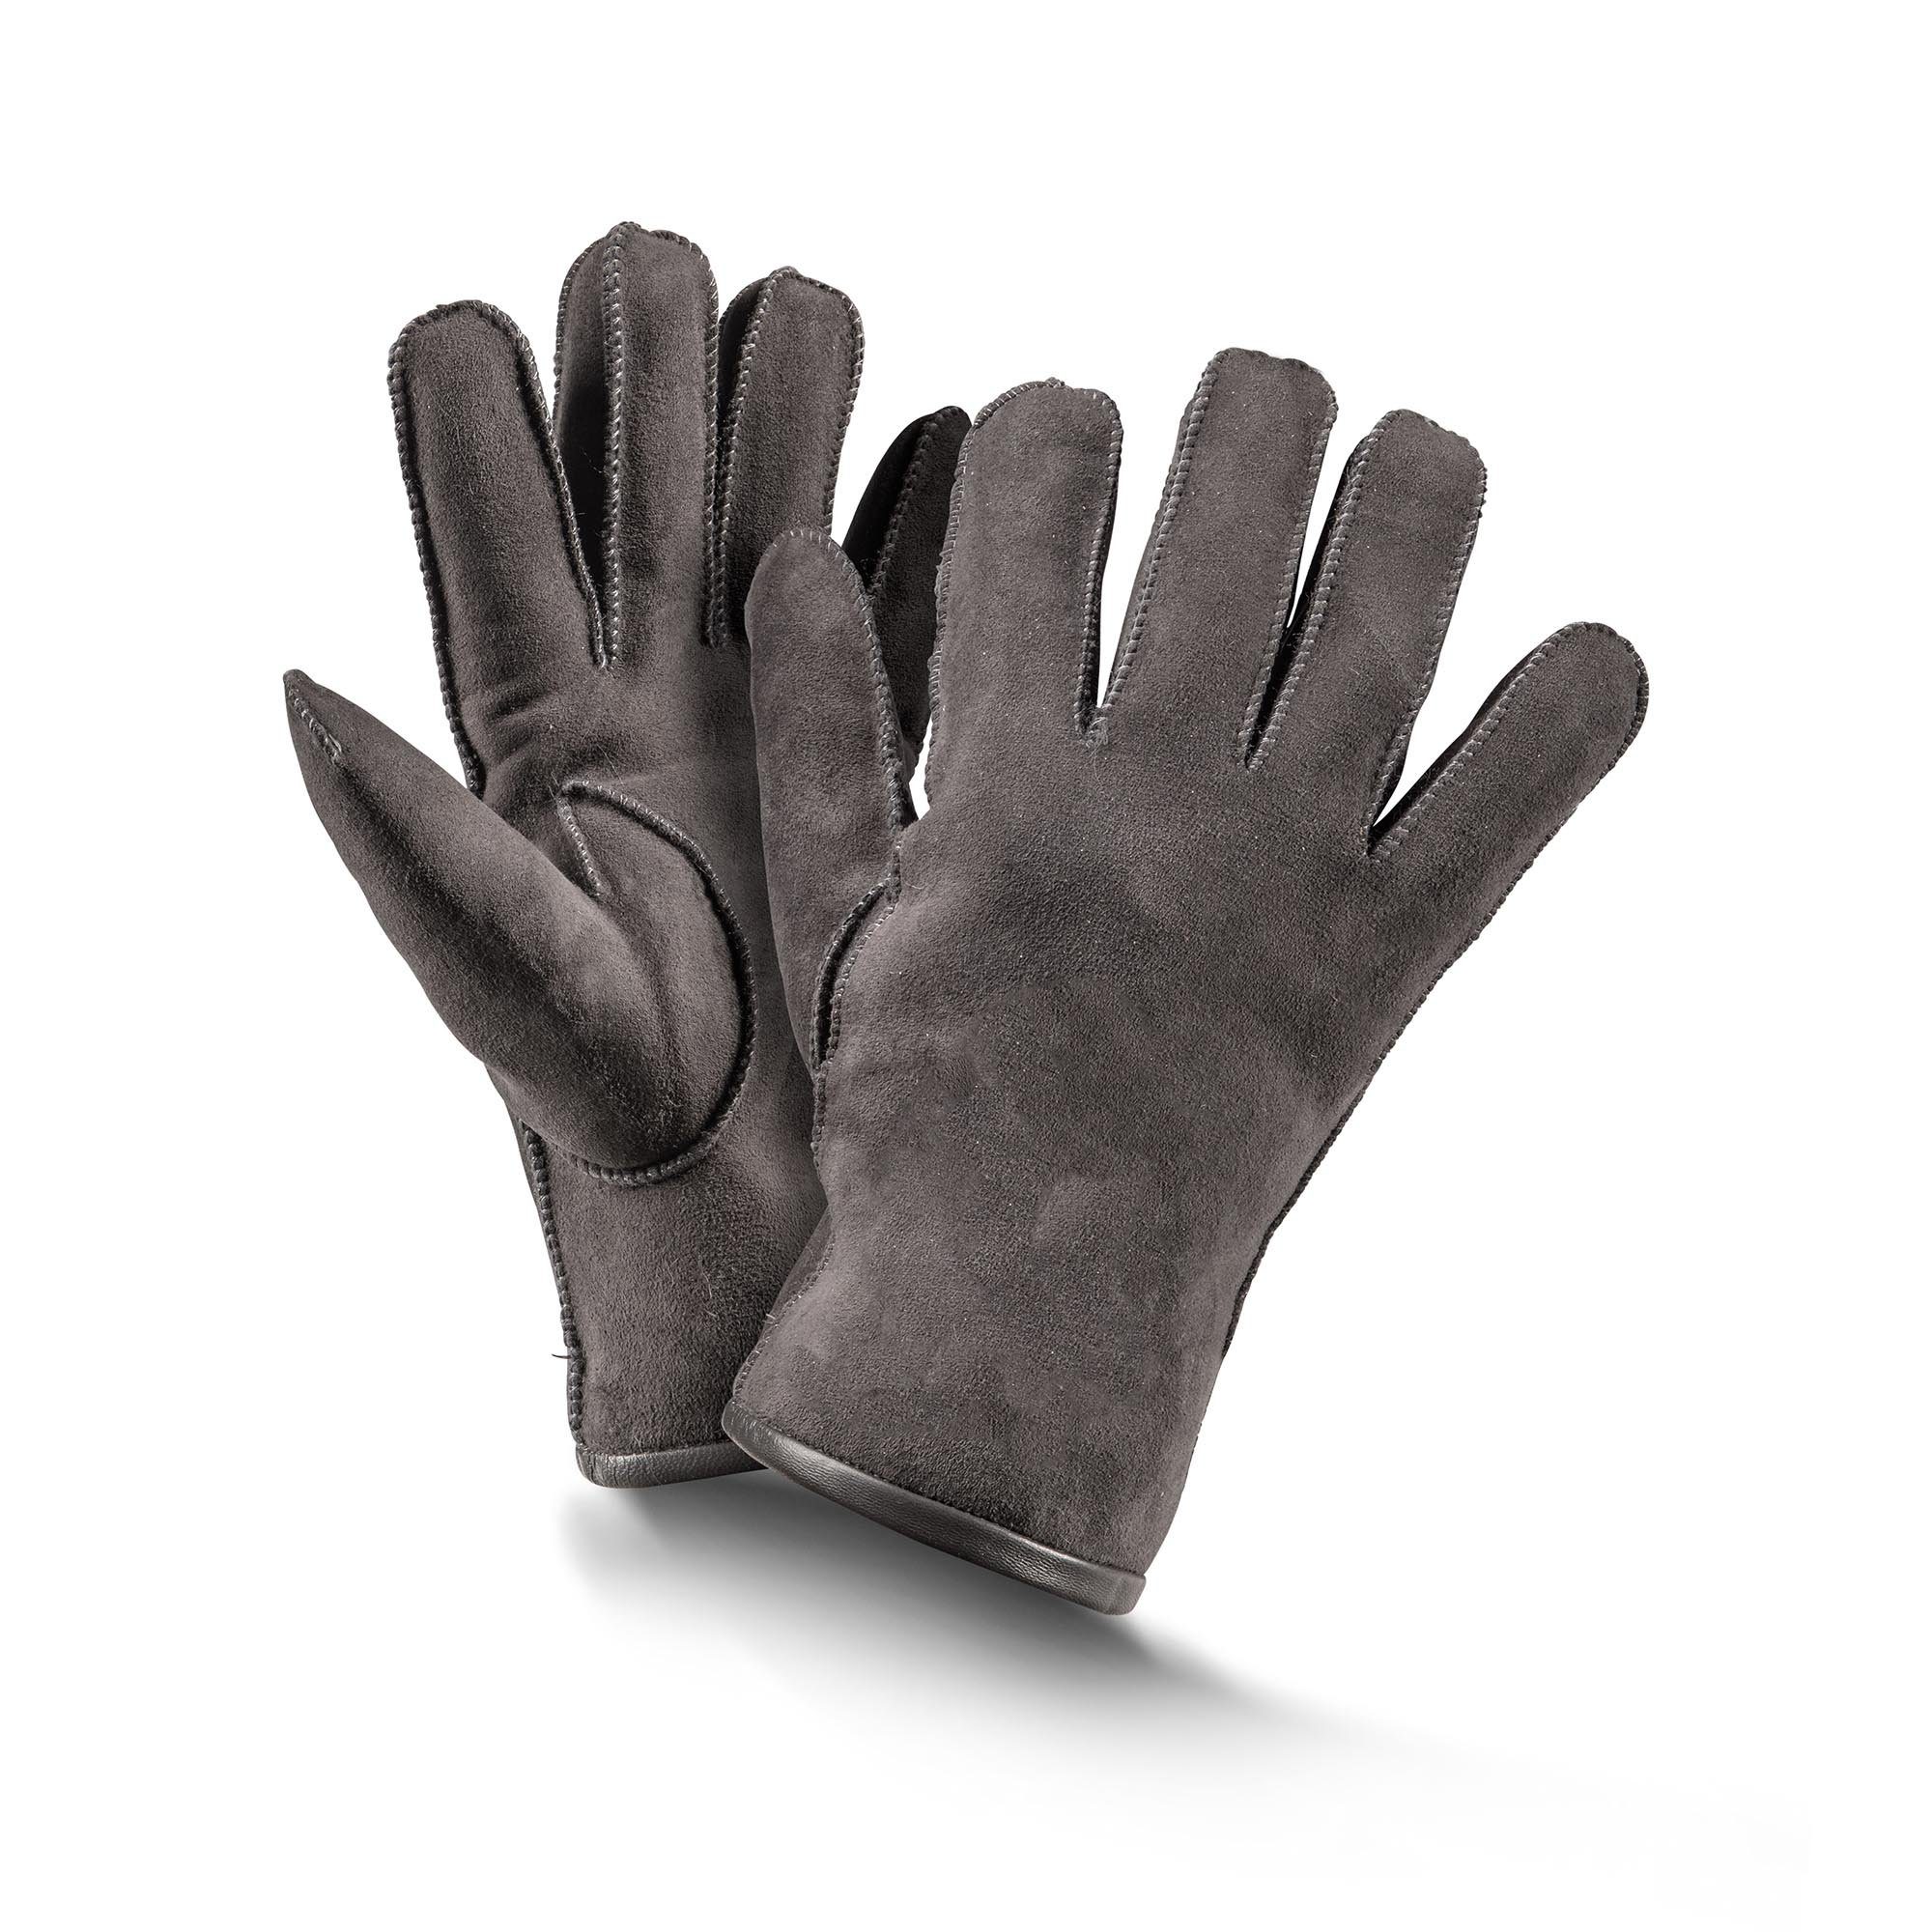 Baumwollhandschuhe Fellhof Handschuhe schwarz/ Gr braun/ grau 6-10 Fingerhandschuhe Basic